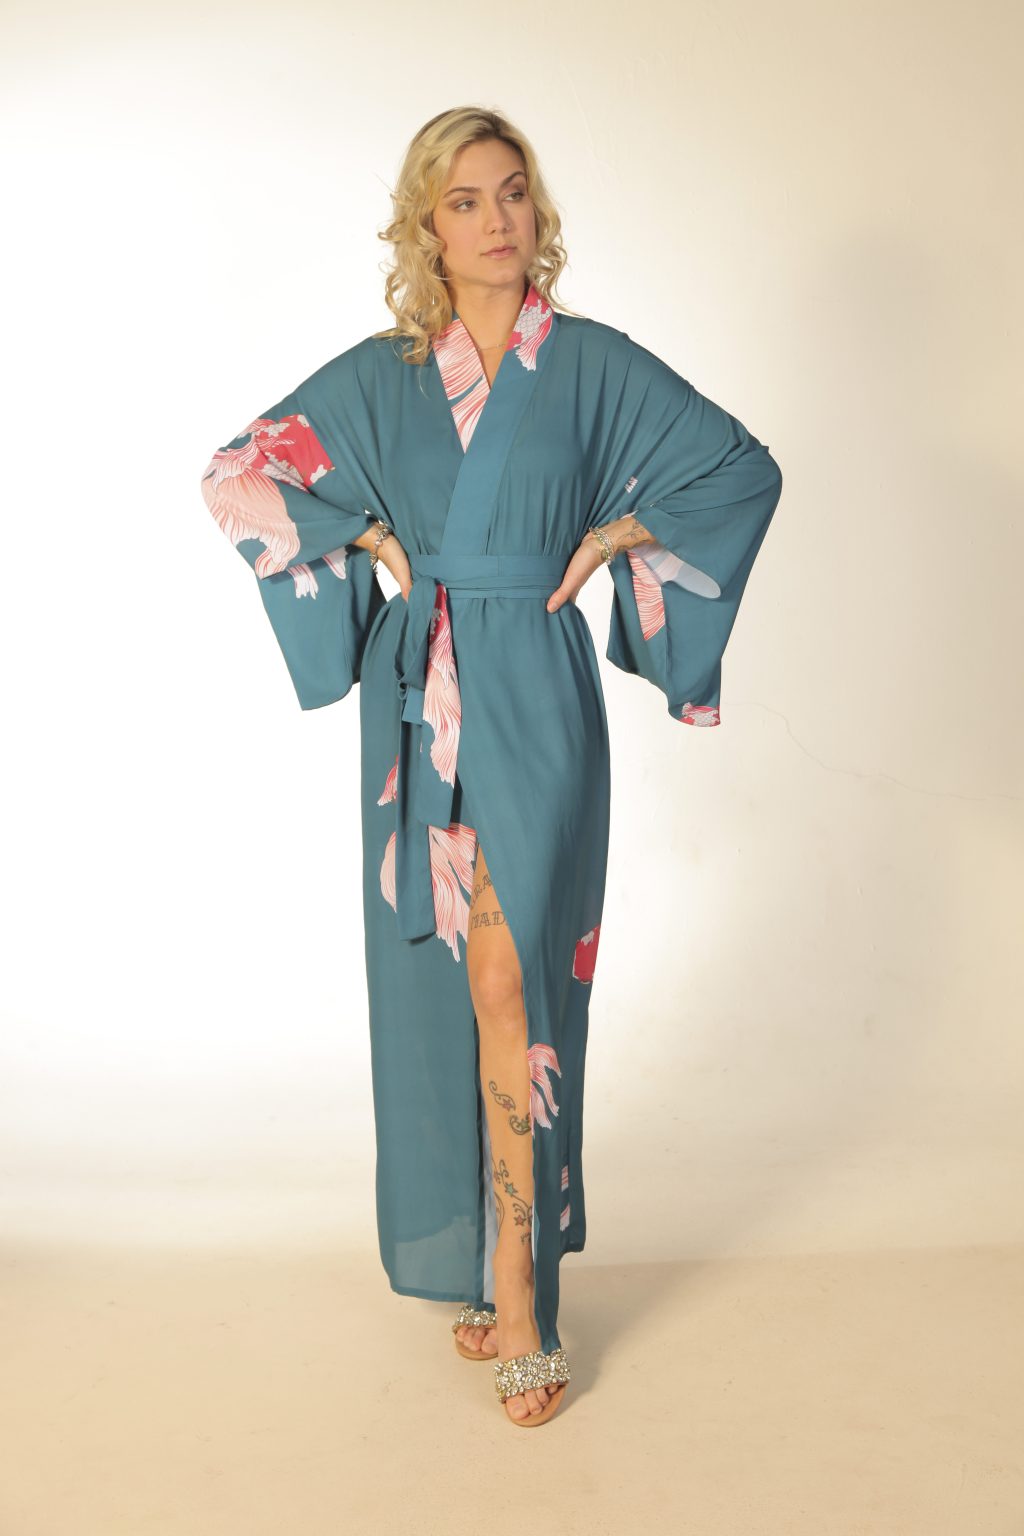 Mulher loira usando um kimono longo manga longa faixa na cintura estampa exclusiva com carpas leveza conforto praticidade maria sanz kimono quimono